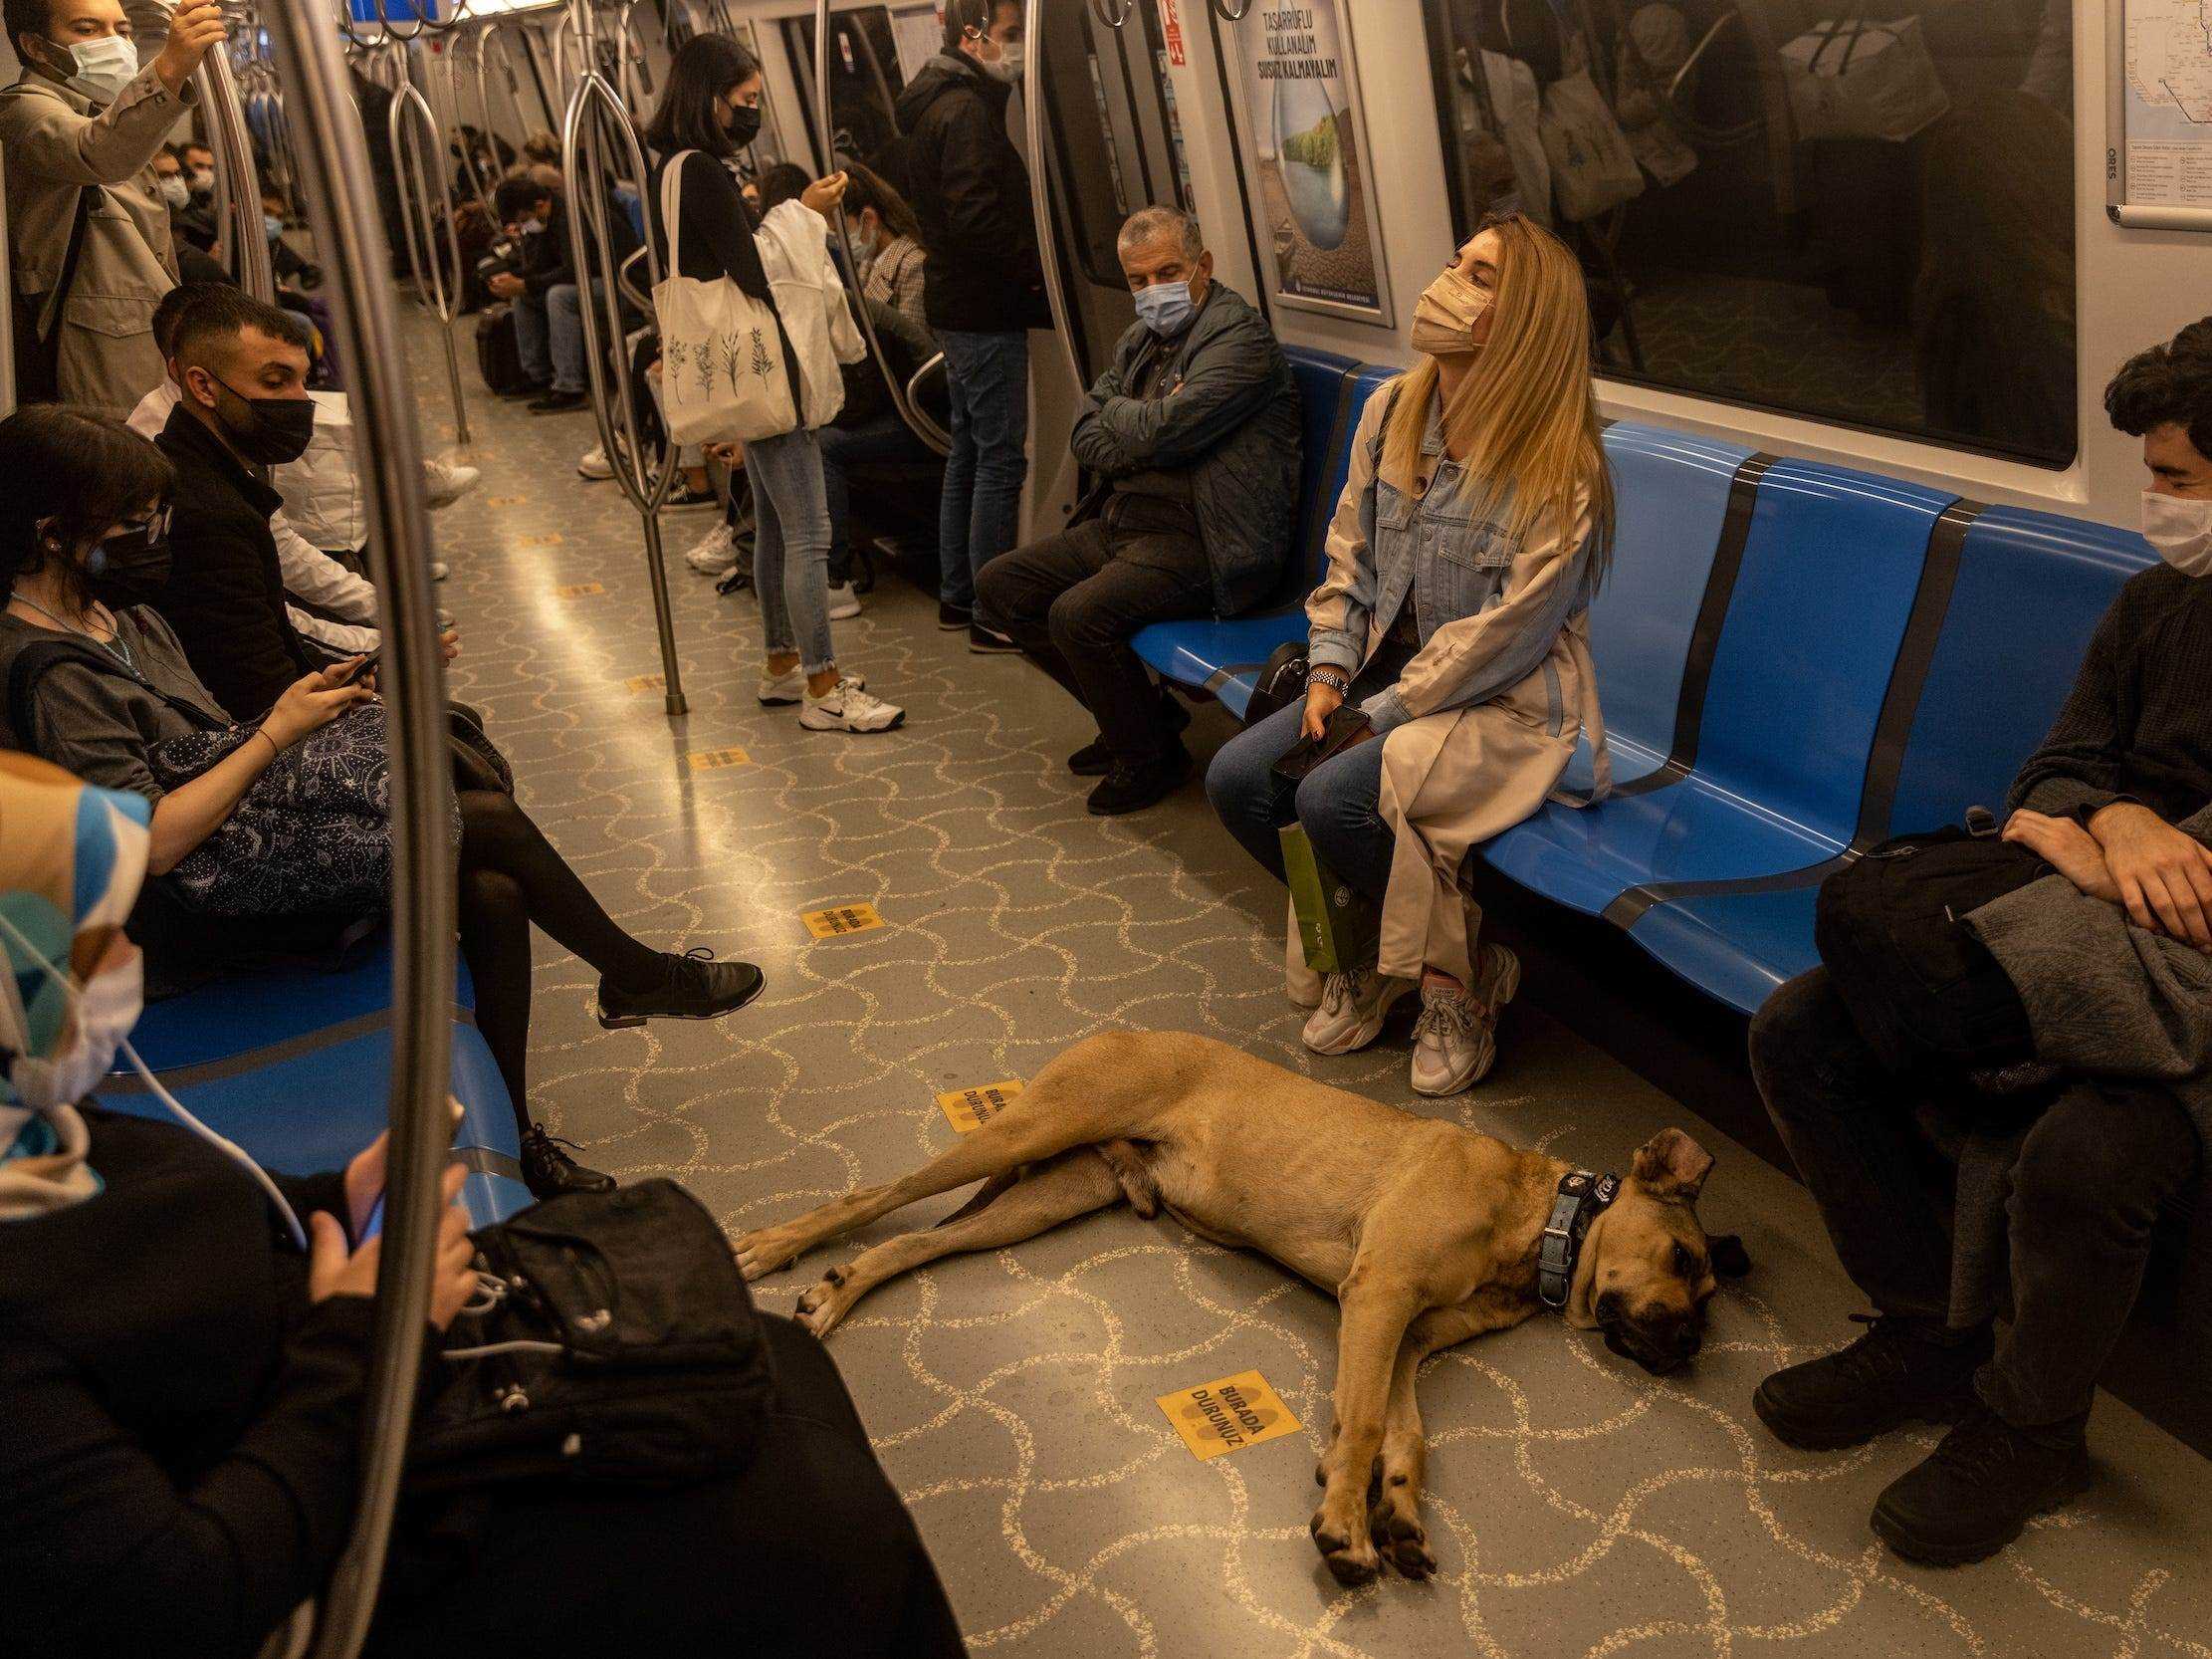 Boji schläft in einer U-Bahn.